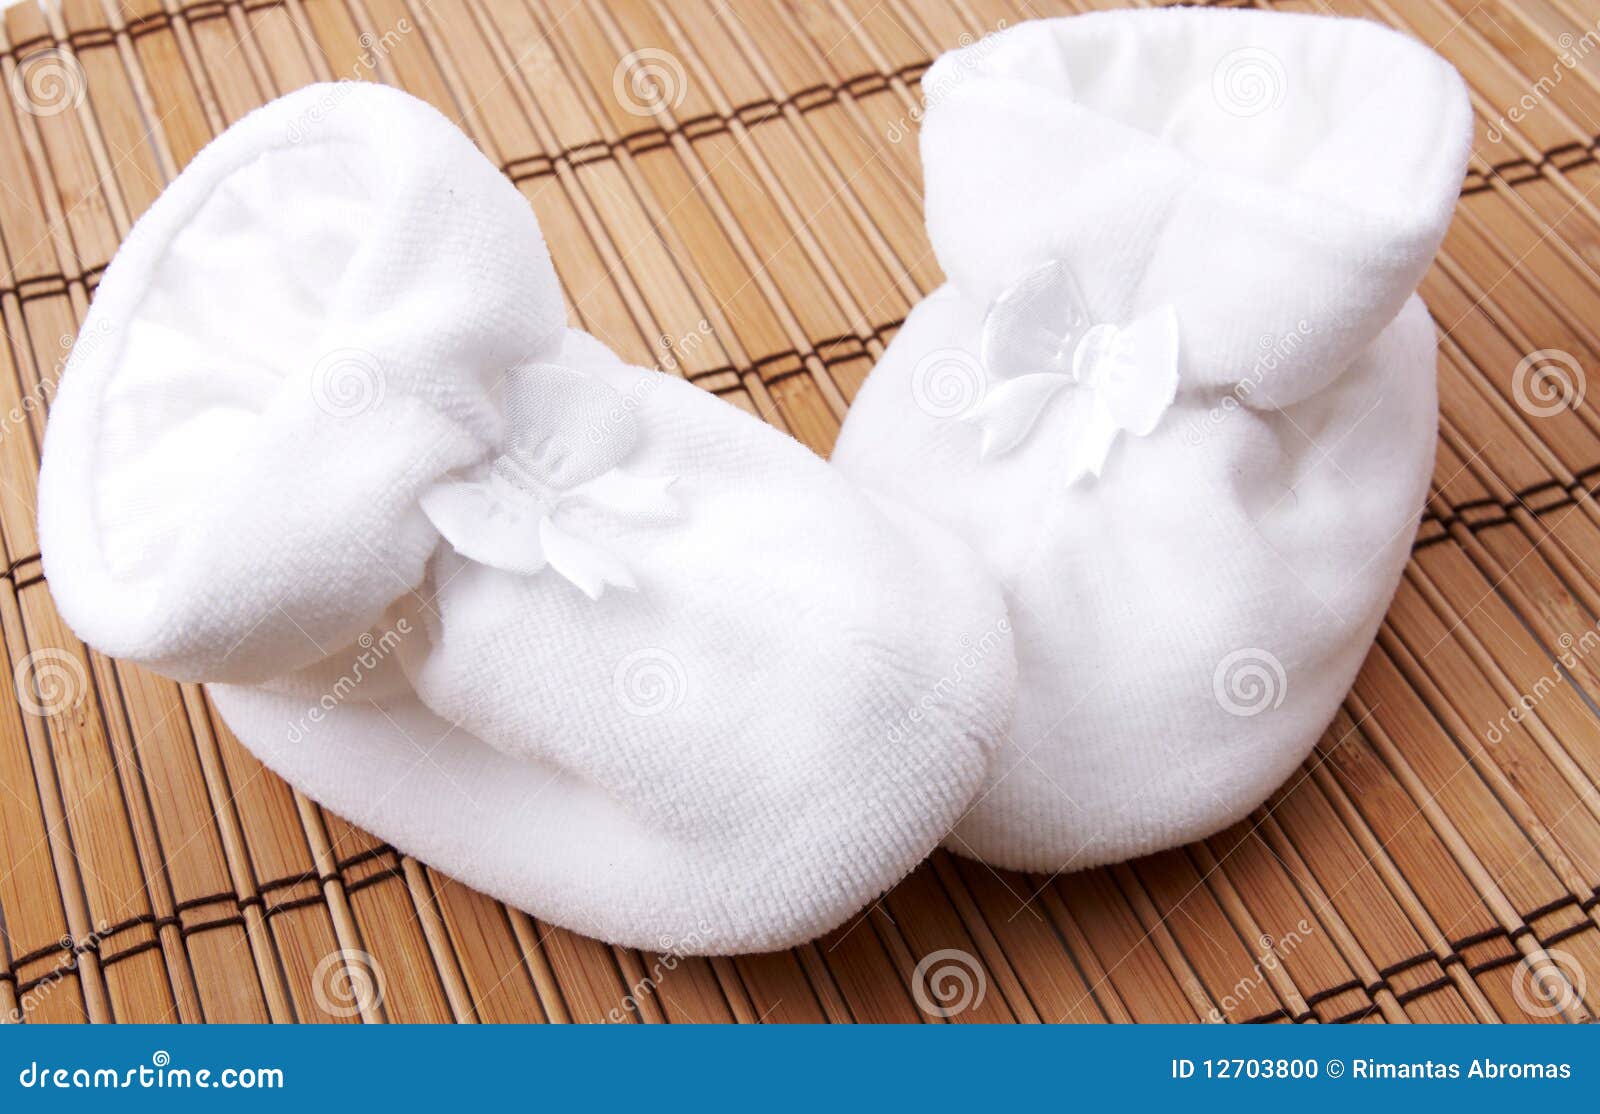 Zapatos De Bebé Nacidos Adornados de archivo - Imagen de infante: 12703800